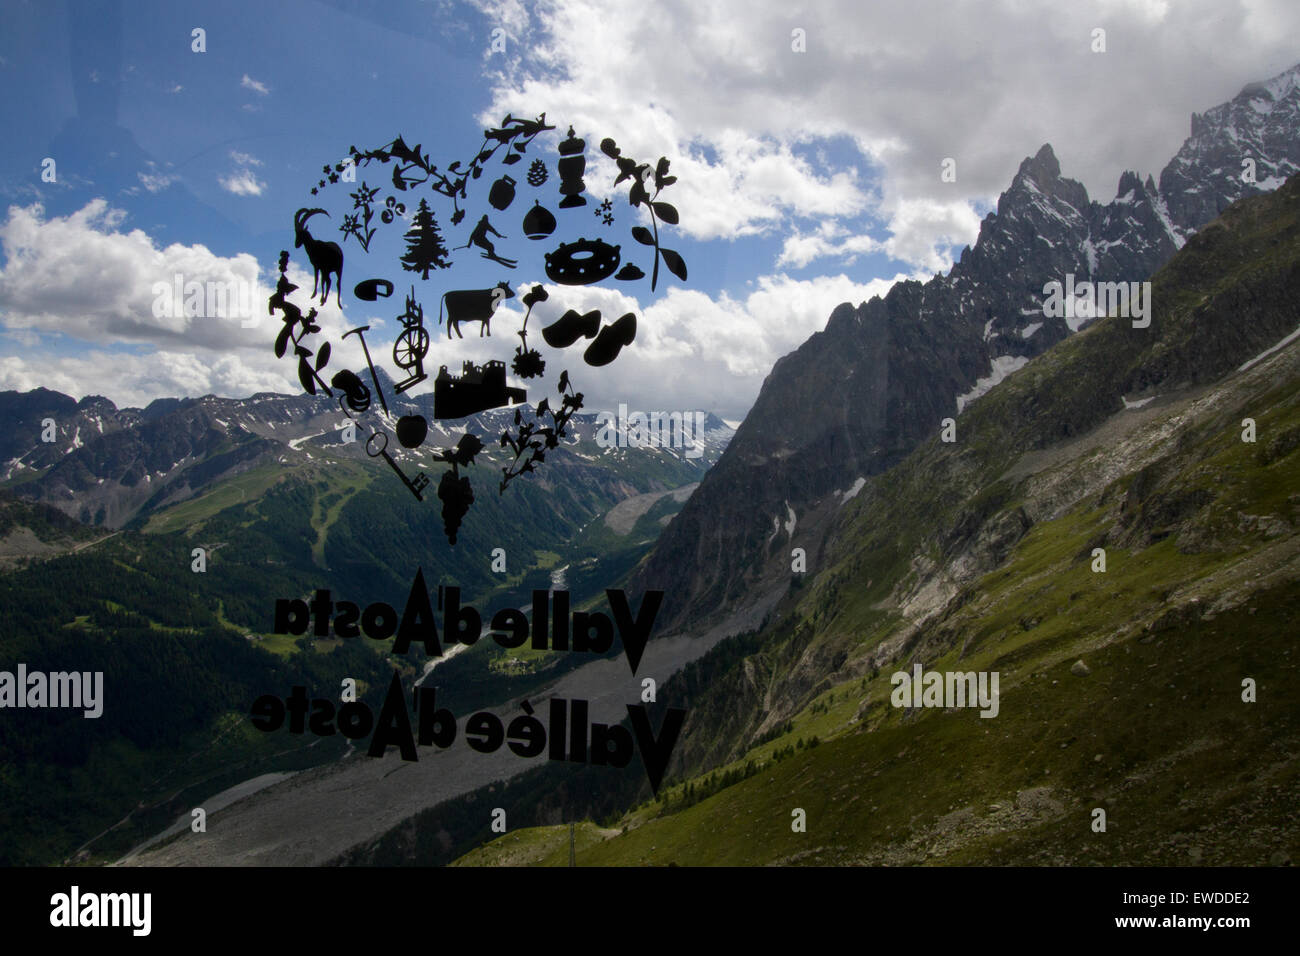 Courmayeur, Italia, 23 giugno 2015. Una valle d'Aosta logo sulla finestra della funivia gondola si sovrappone la Val Veny paesaggio. Il nuovo Skyway funivia che collega la città di Courmayeur a Punta Helbronner (3,466 m) nel massiccio del Monte Bianco. Foto Stock